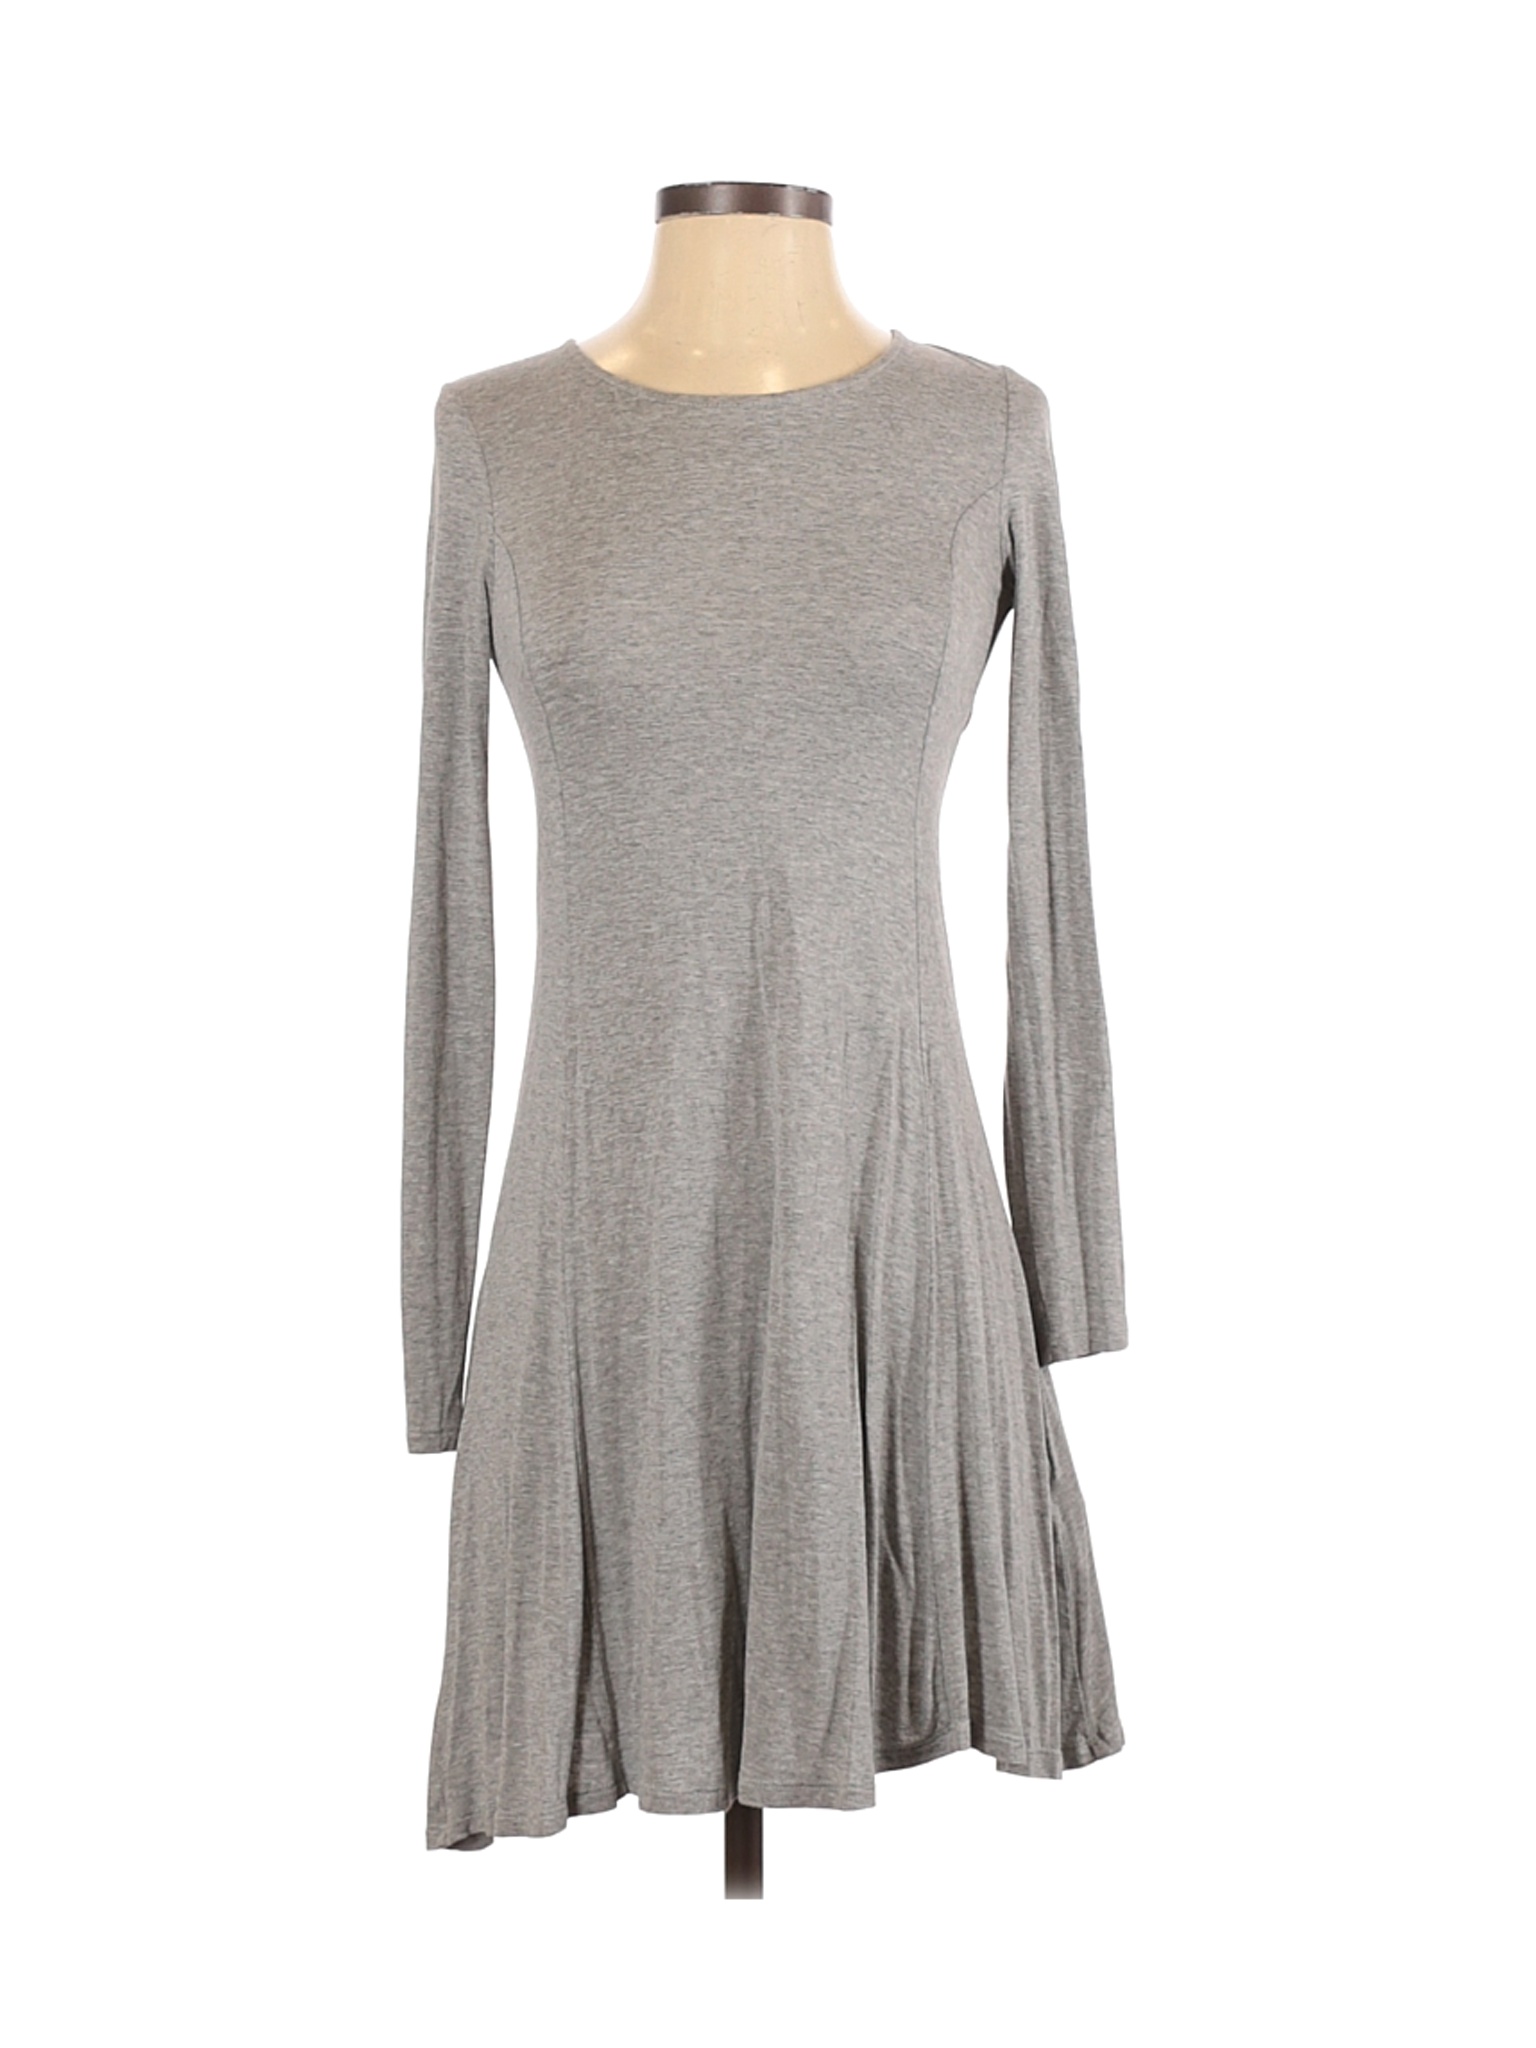 Forever 21 Women Gray Casual Dress S | eBay